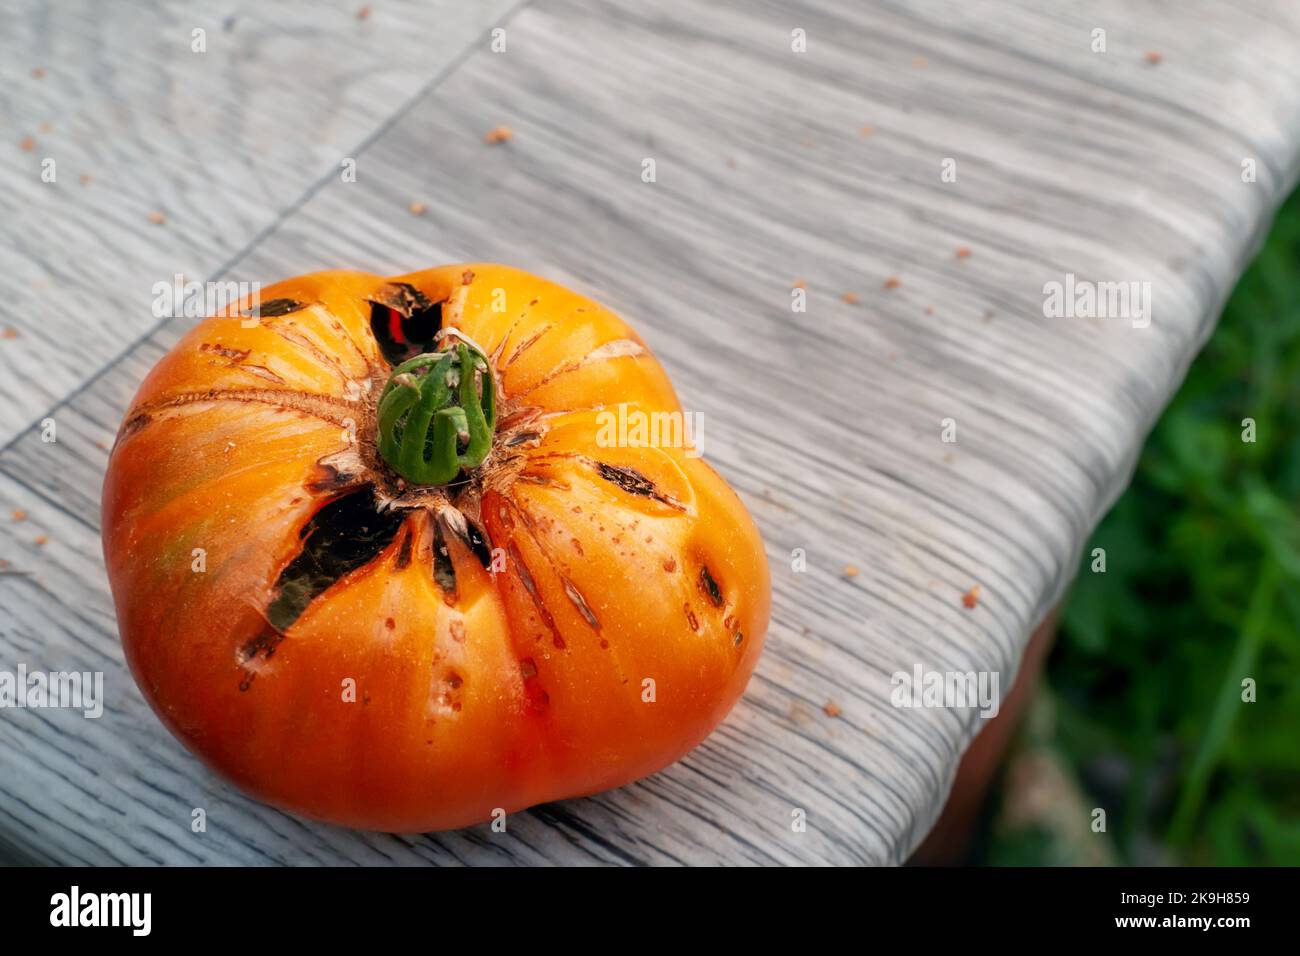 Agrietamiento de tomates. Daños y enfermedades de los frutos de tomate causados por el cuidado inadecuado de las plantas. Espacio de copia. Foto de stock